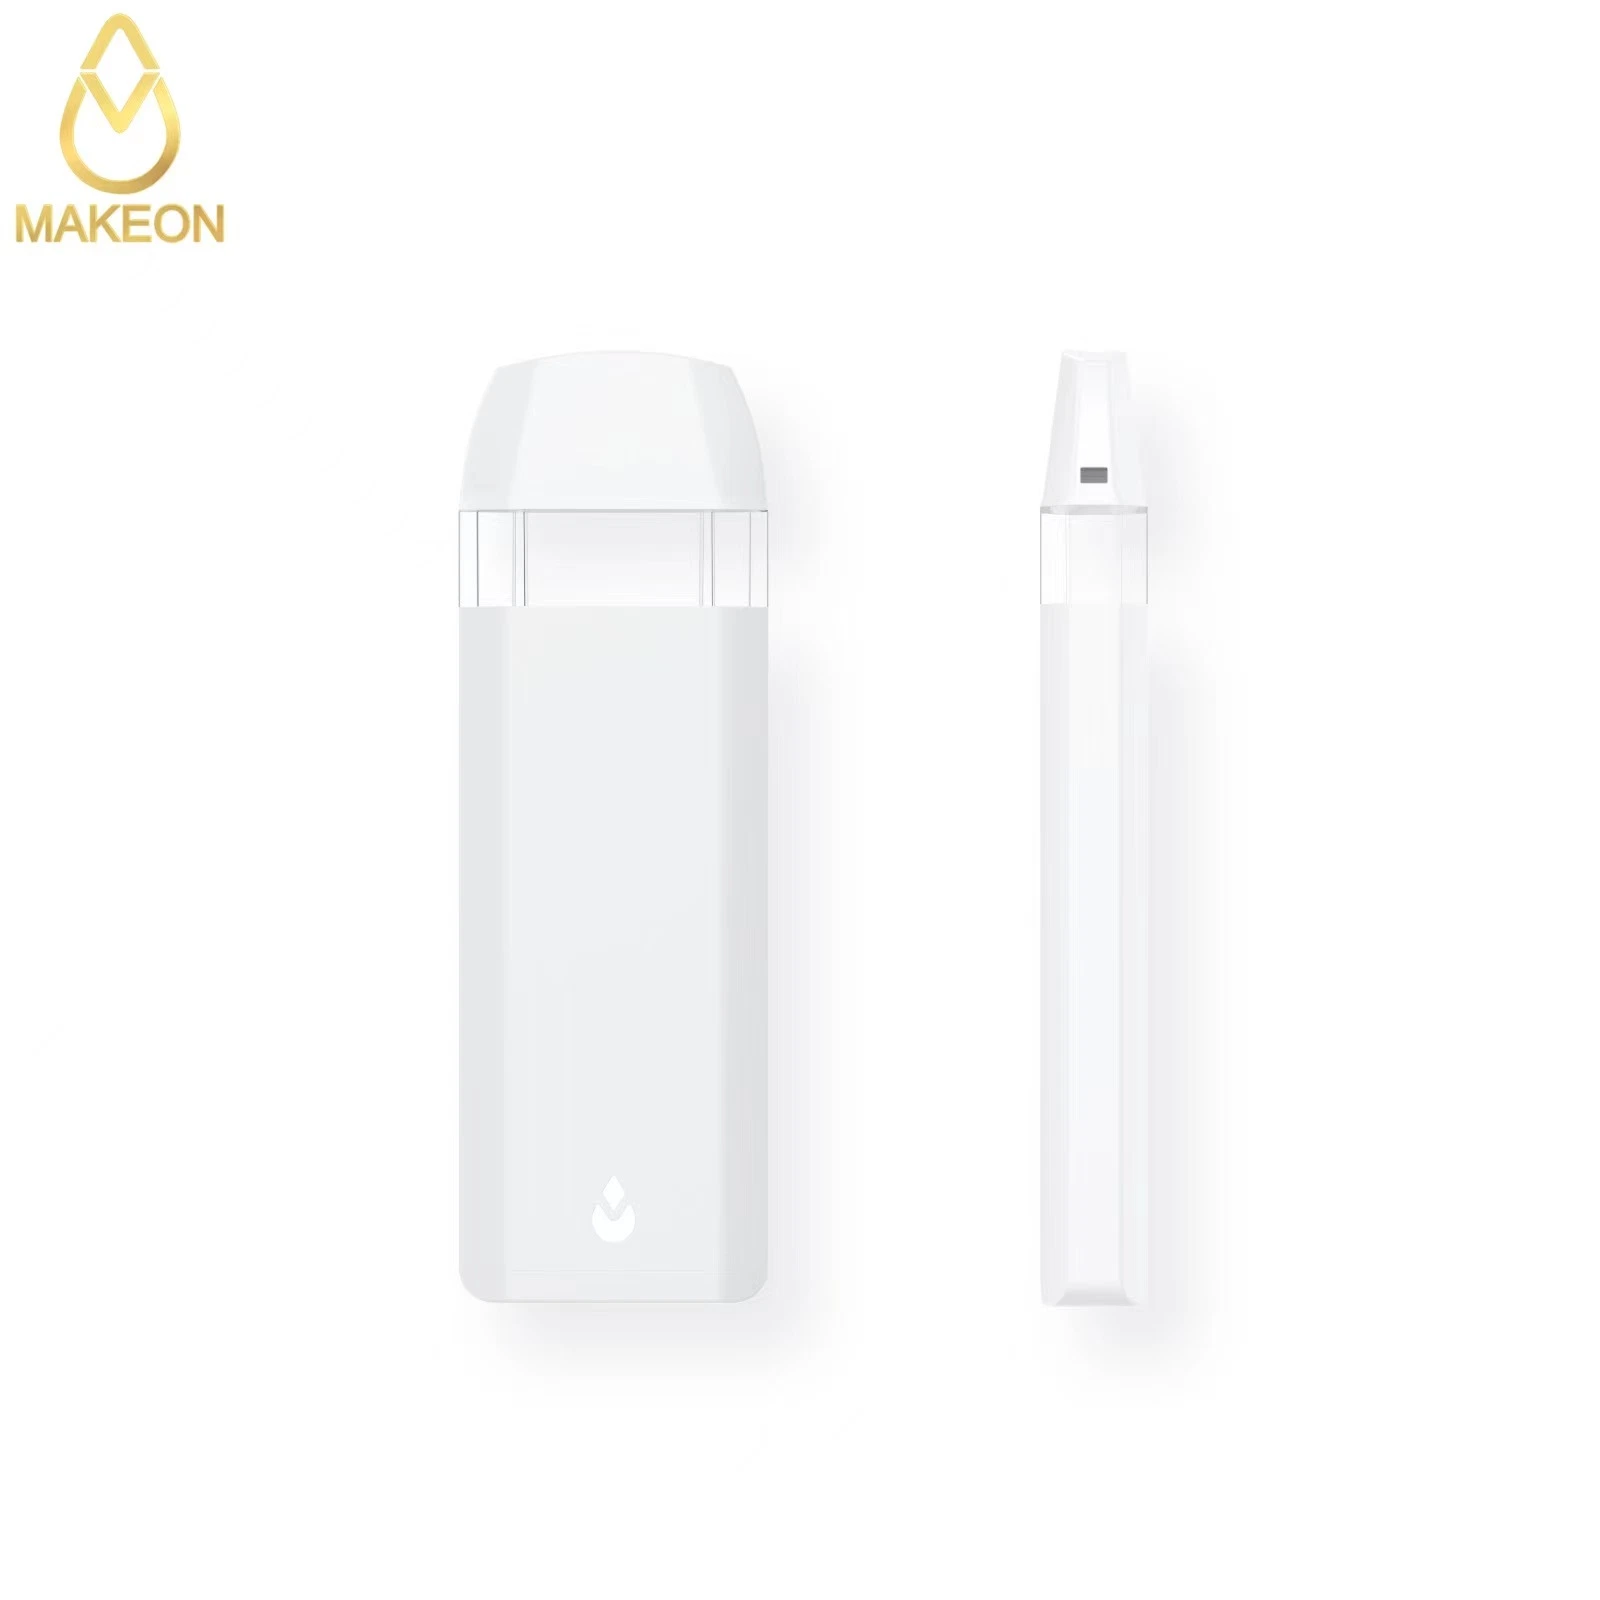 2G disponible personalizado Makeon desechables dispositivo por dispositivo de impresión de logotipo de aceite espeso